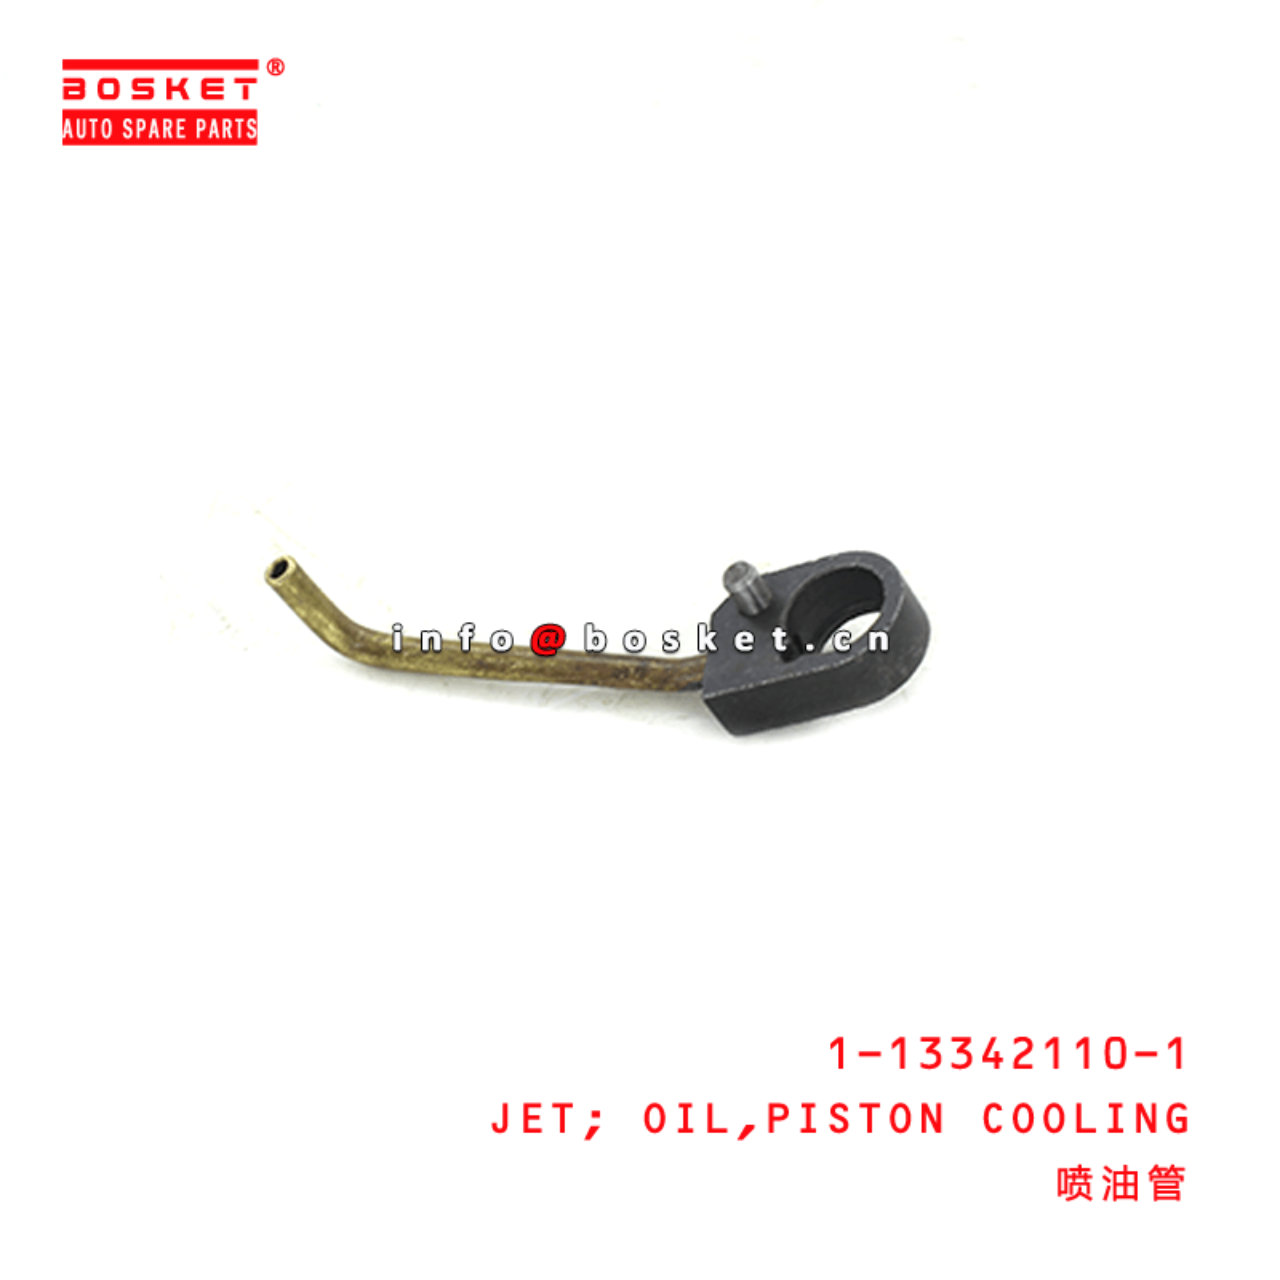  1-13342110-1 Piston Cooling Oil Jet 1133421101 Suitable for ISUZU FSR12 6BG1